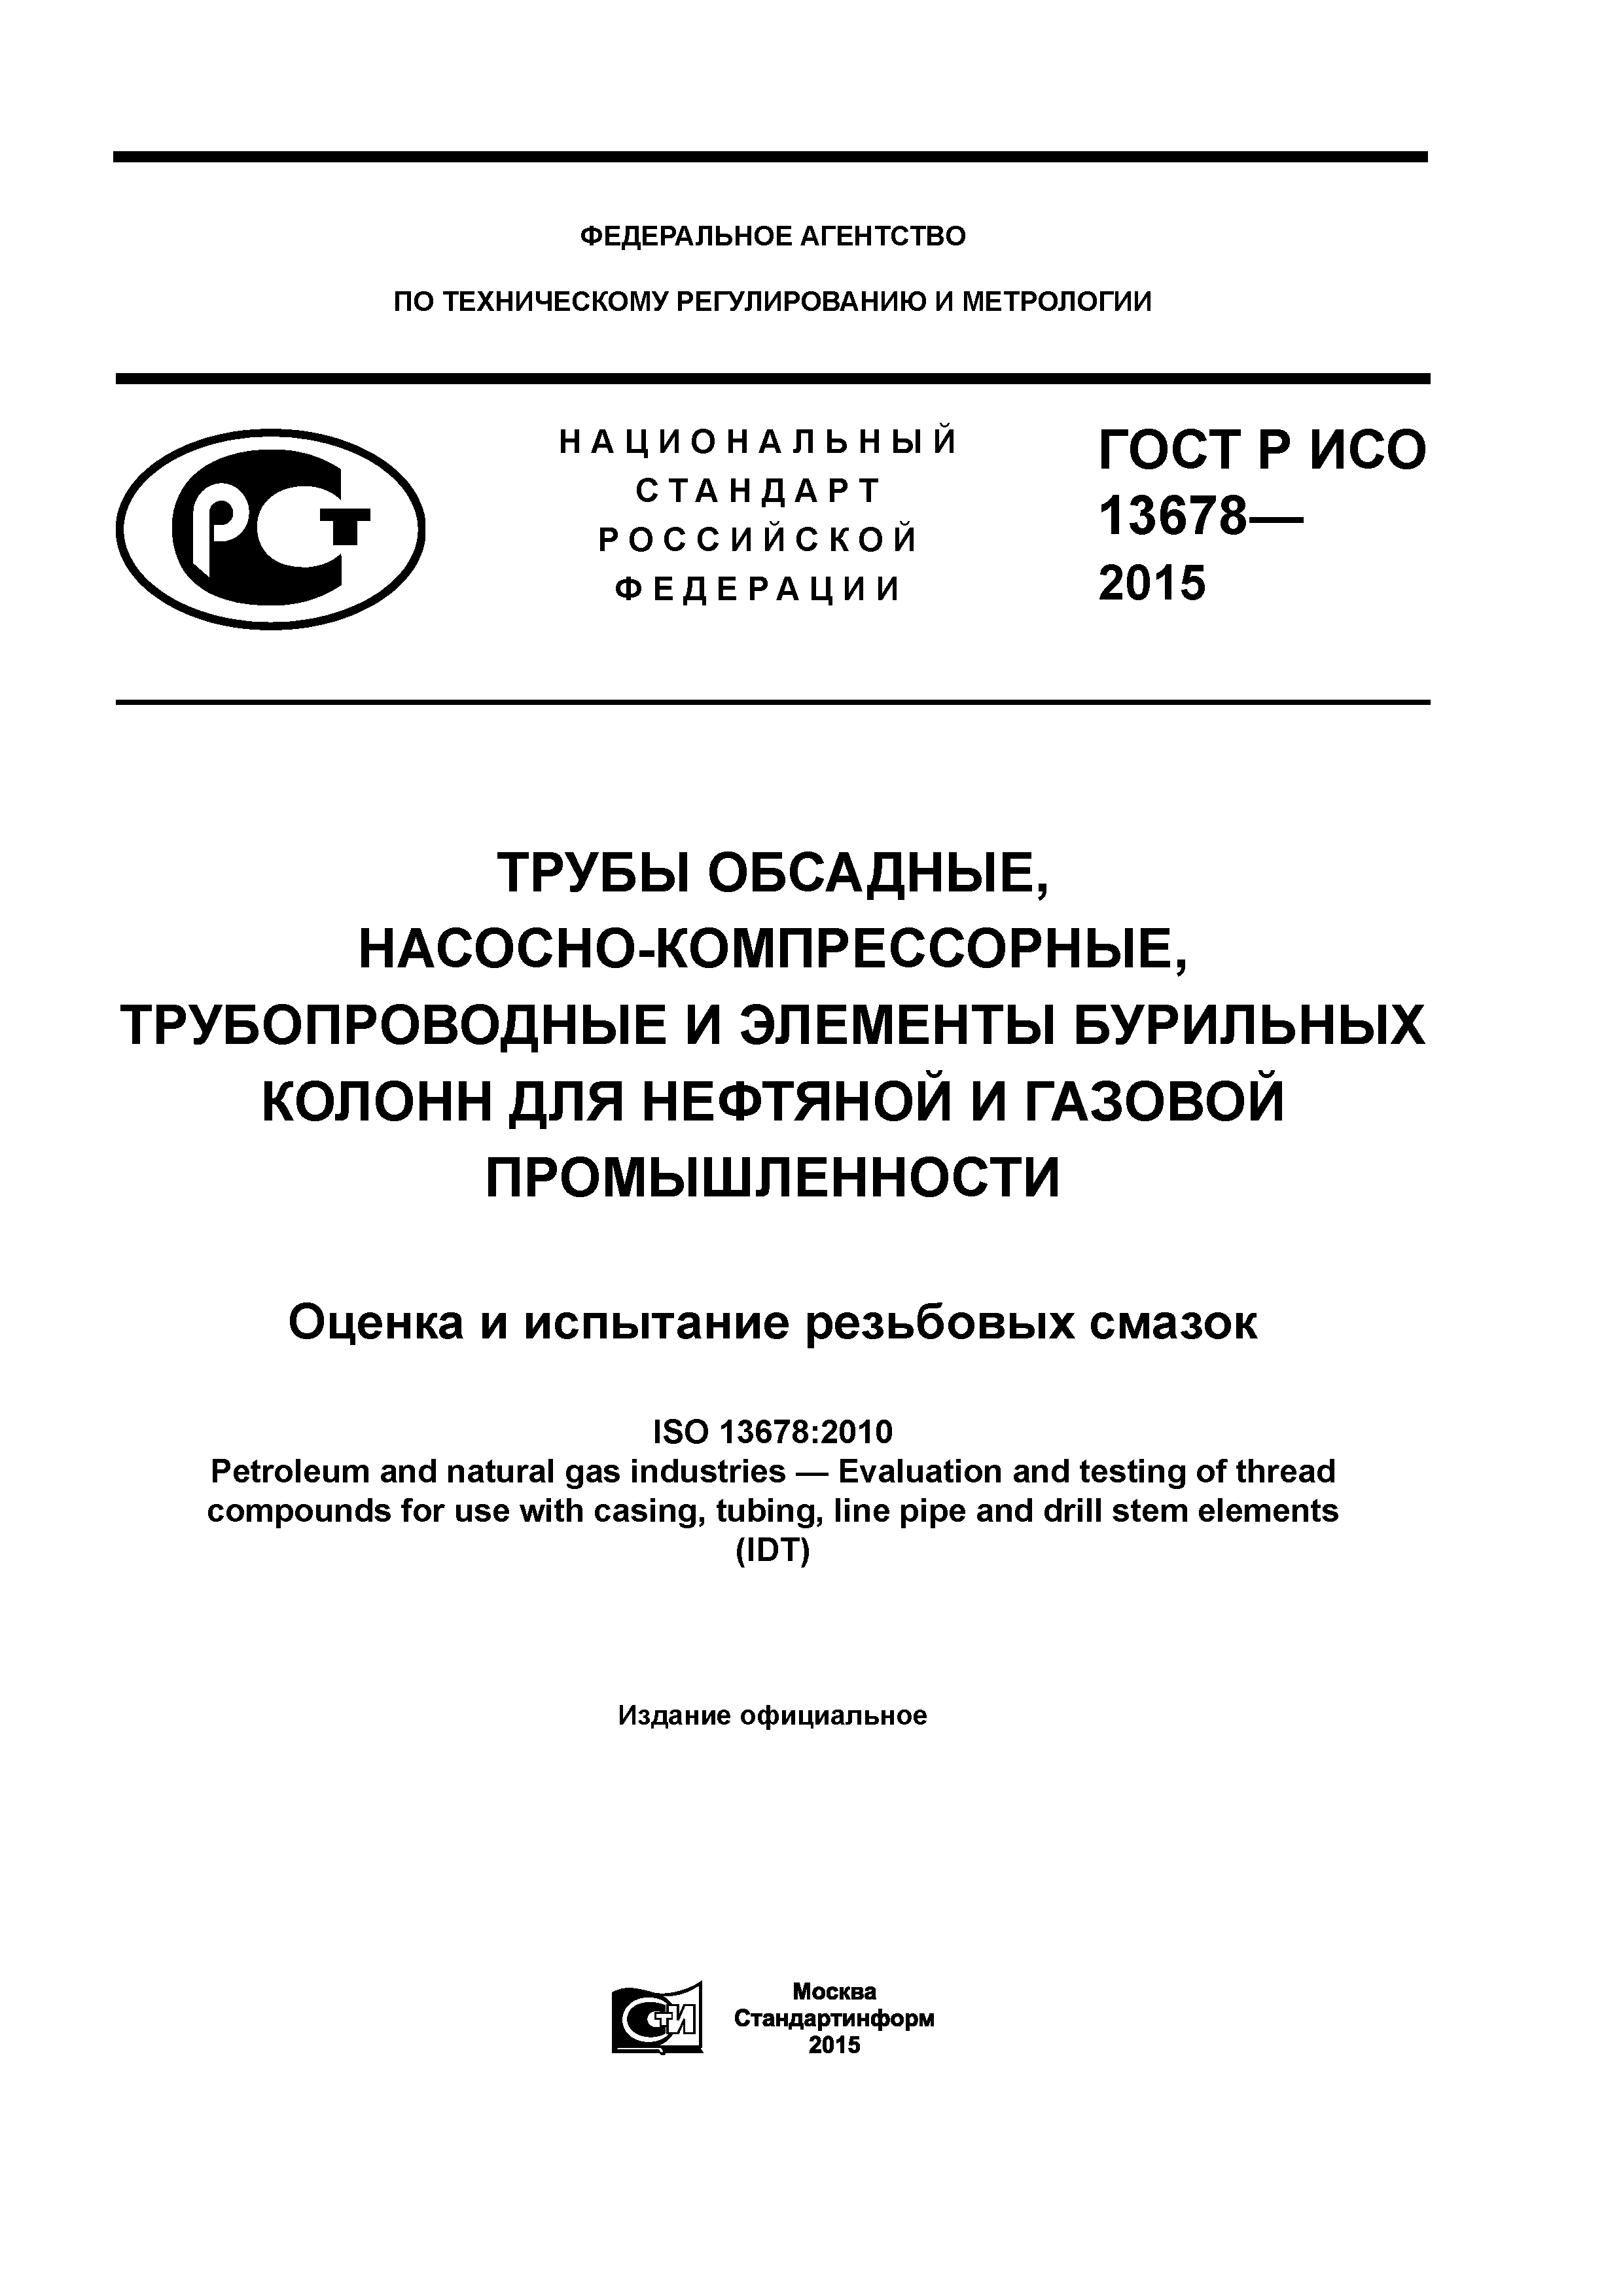 ГОСТ Р ИСО 13678-2015